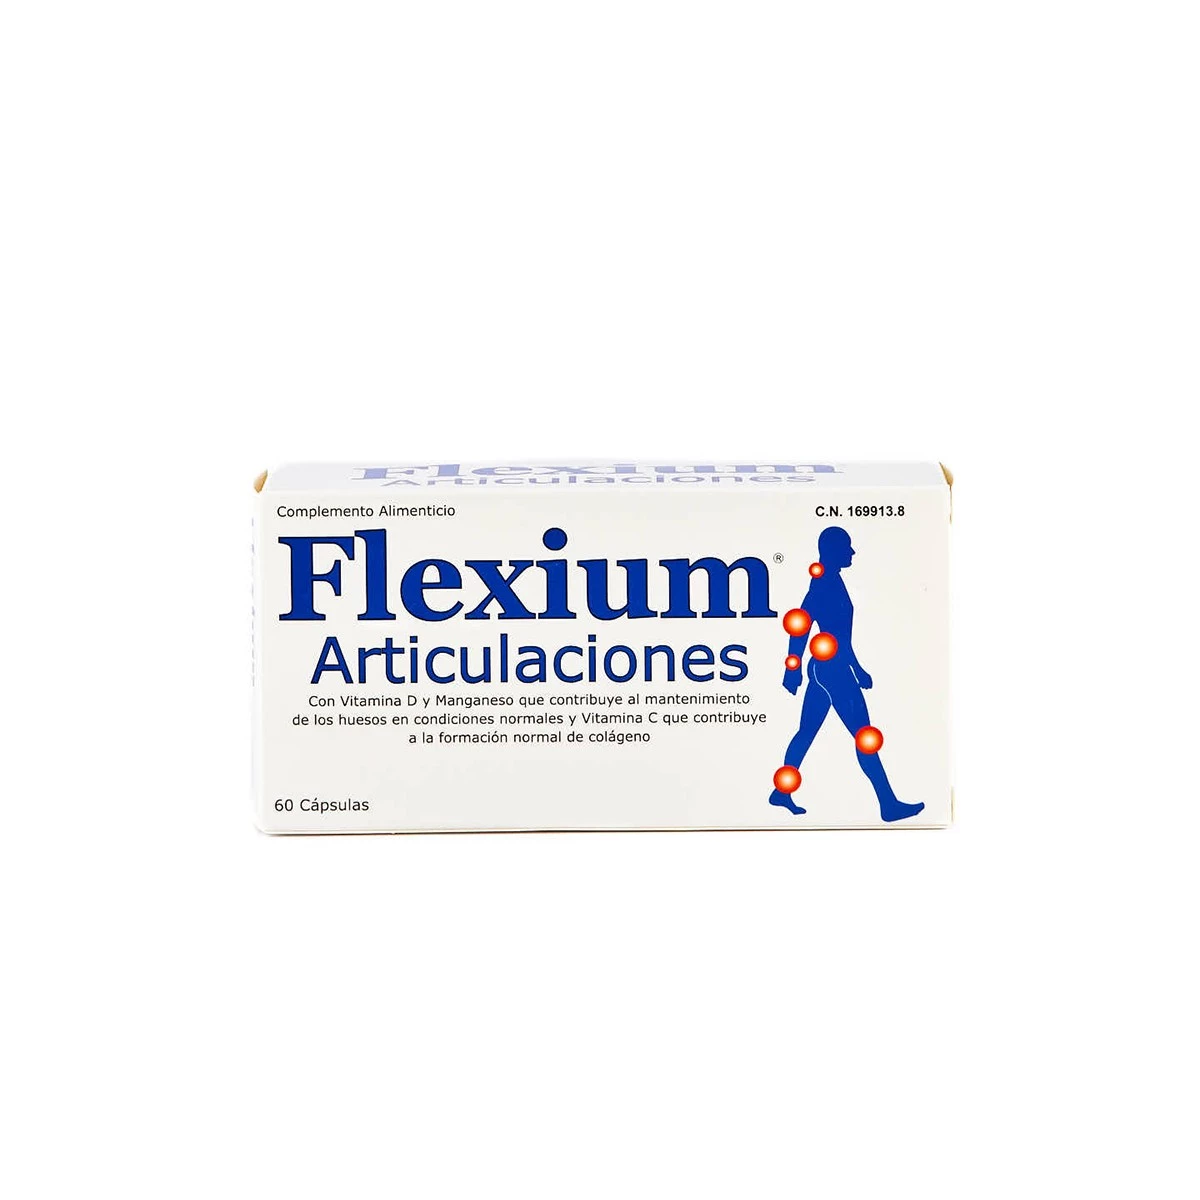 Flexium Articulaciones ayuda a mantener el sistema osteoarticular